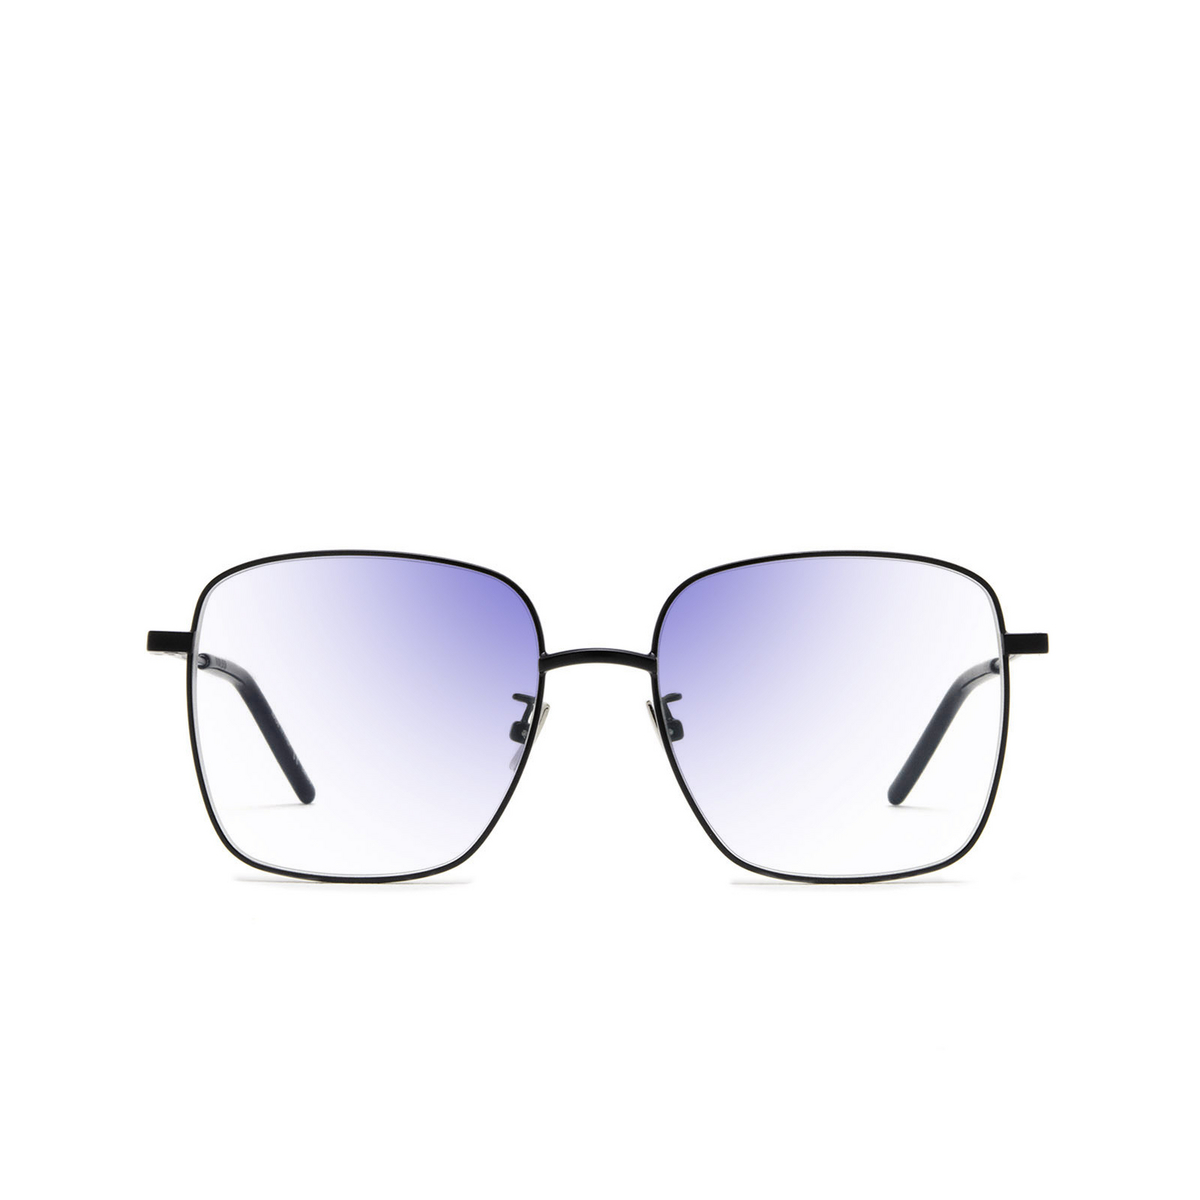 Saint Laurent® Square Sunglasses: SL 314 SUN color Black 001 - front view.